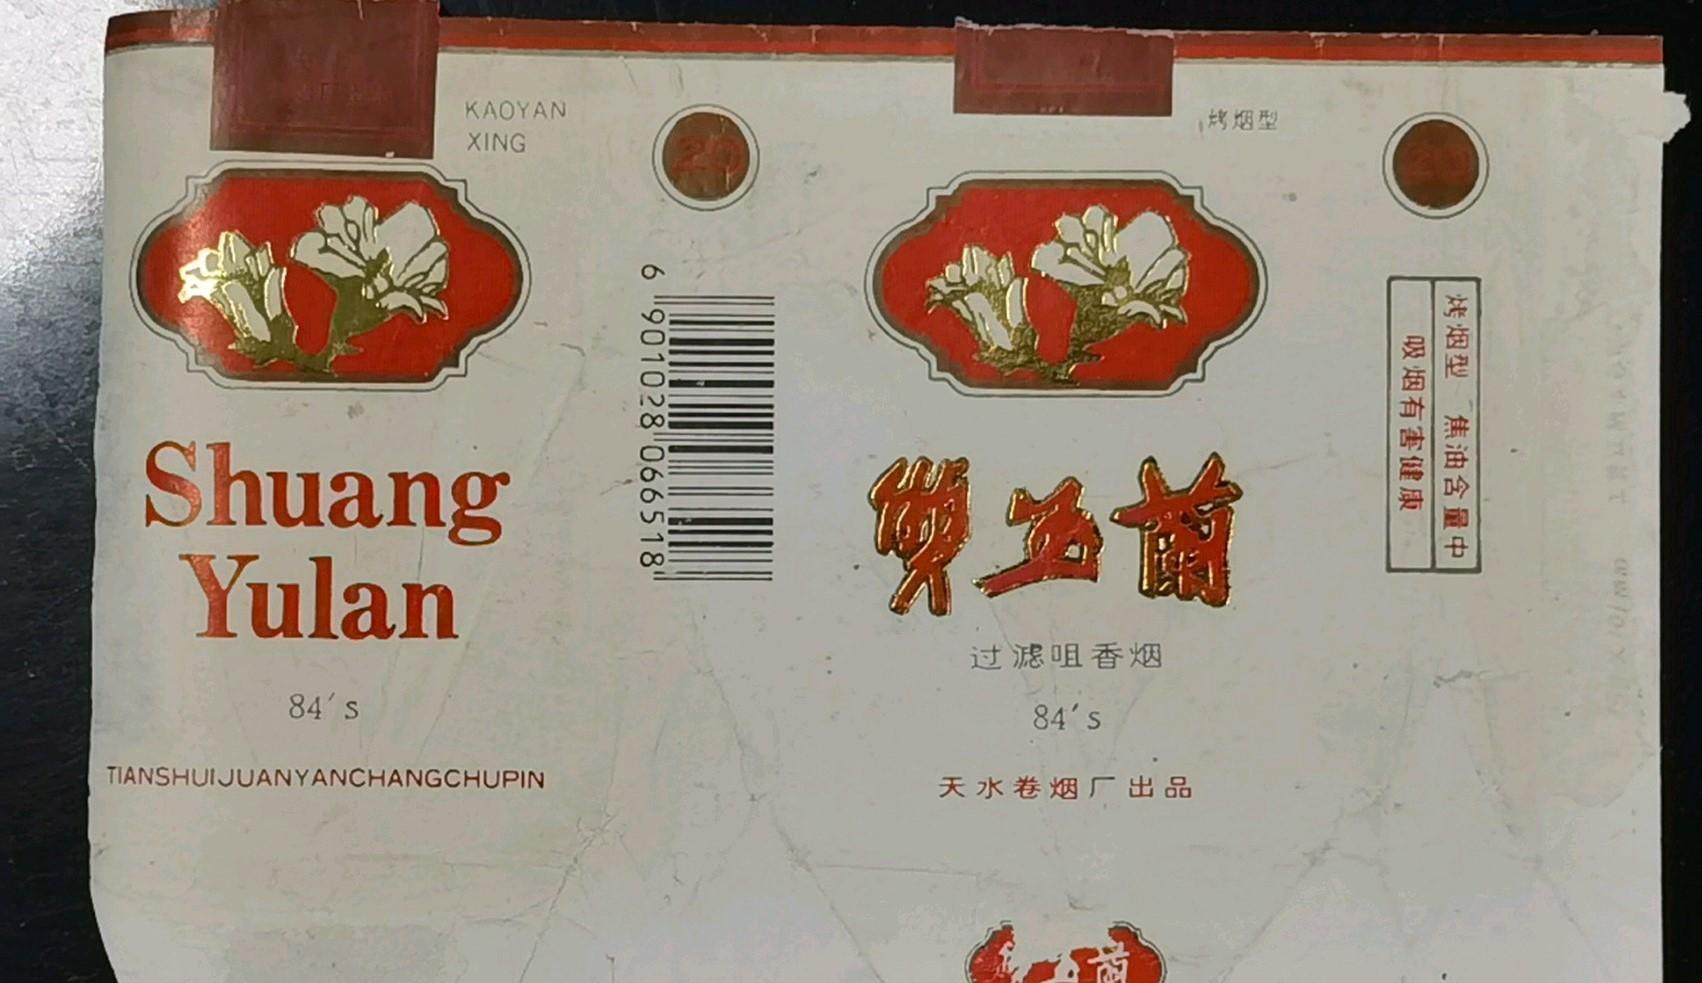 中国独有的老香烟品牌如恒大,大婴孩,大生产等在70年代非常流行,而